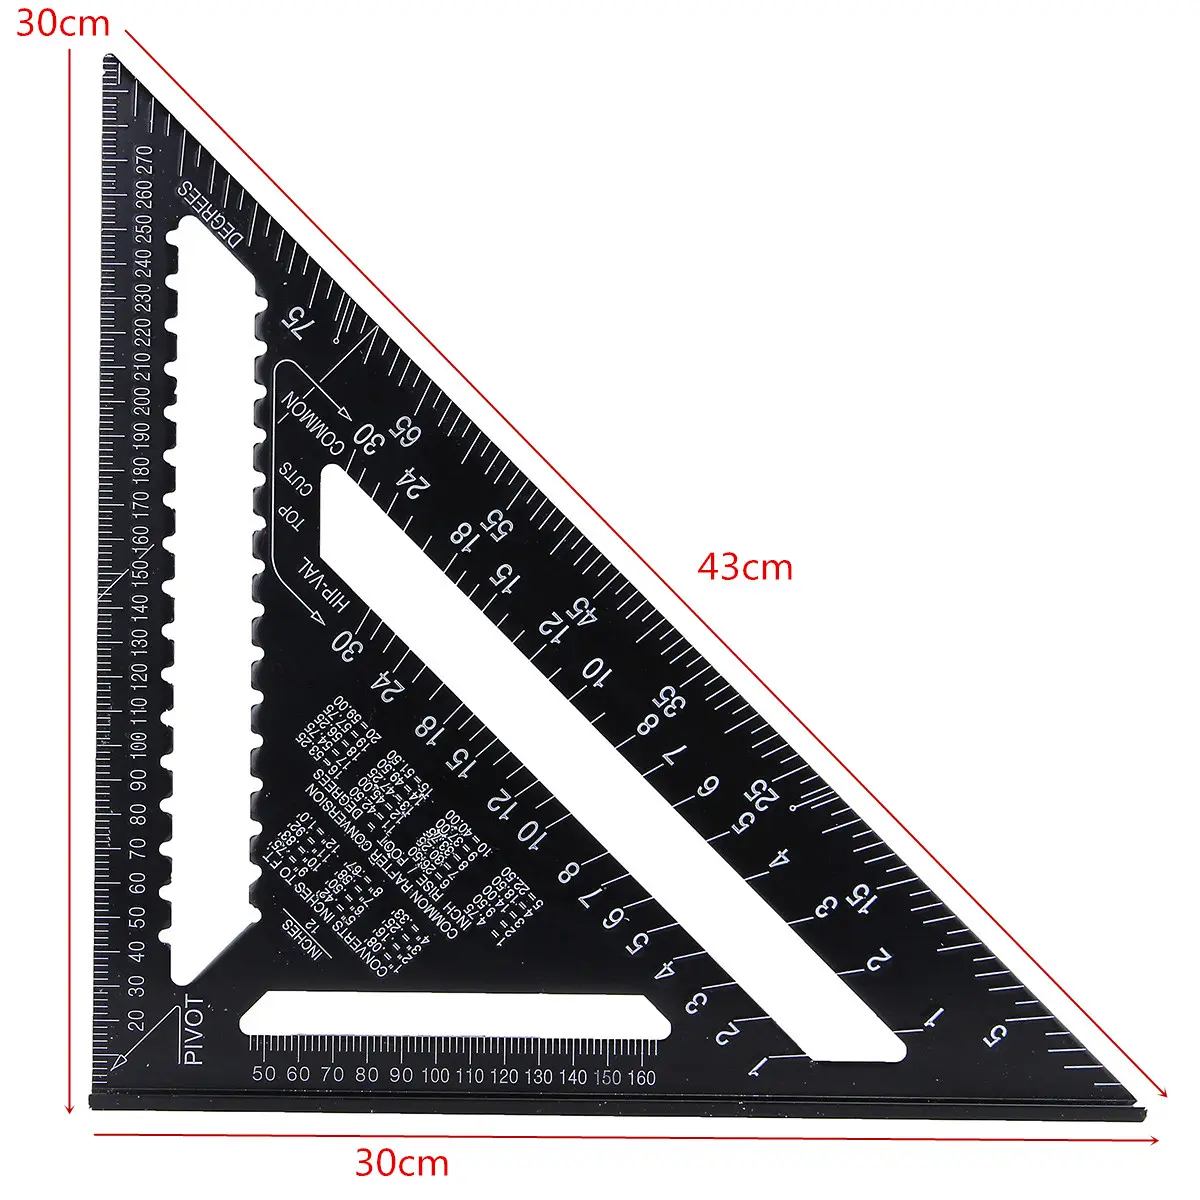 Regla cuadrada de aleación de aluminio para medición de ángulo métrico, herramienta de carpintería, 7 pulgadas